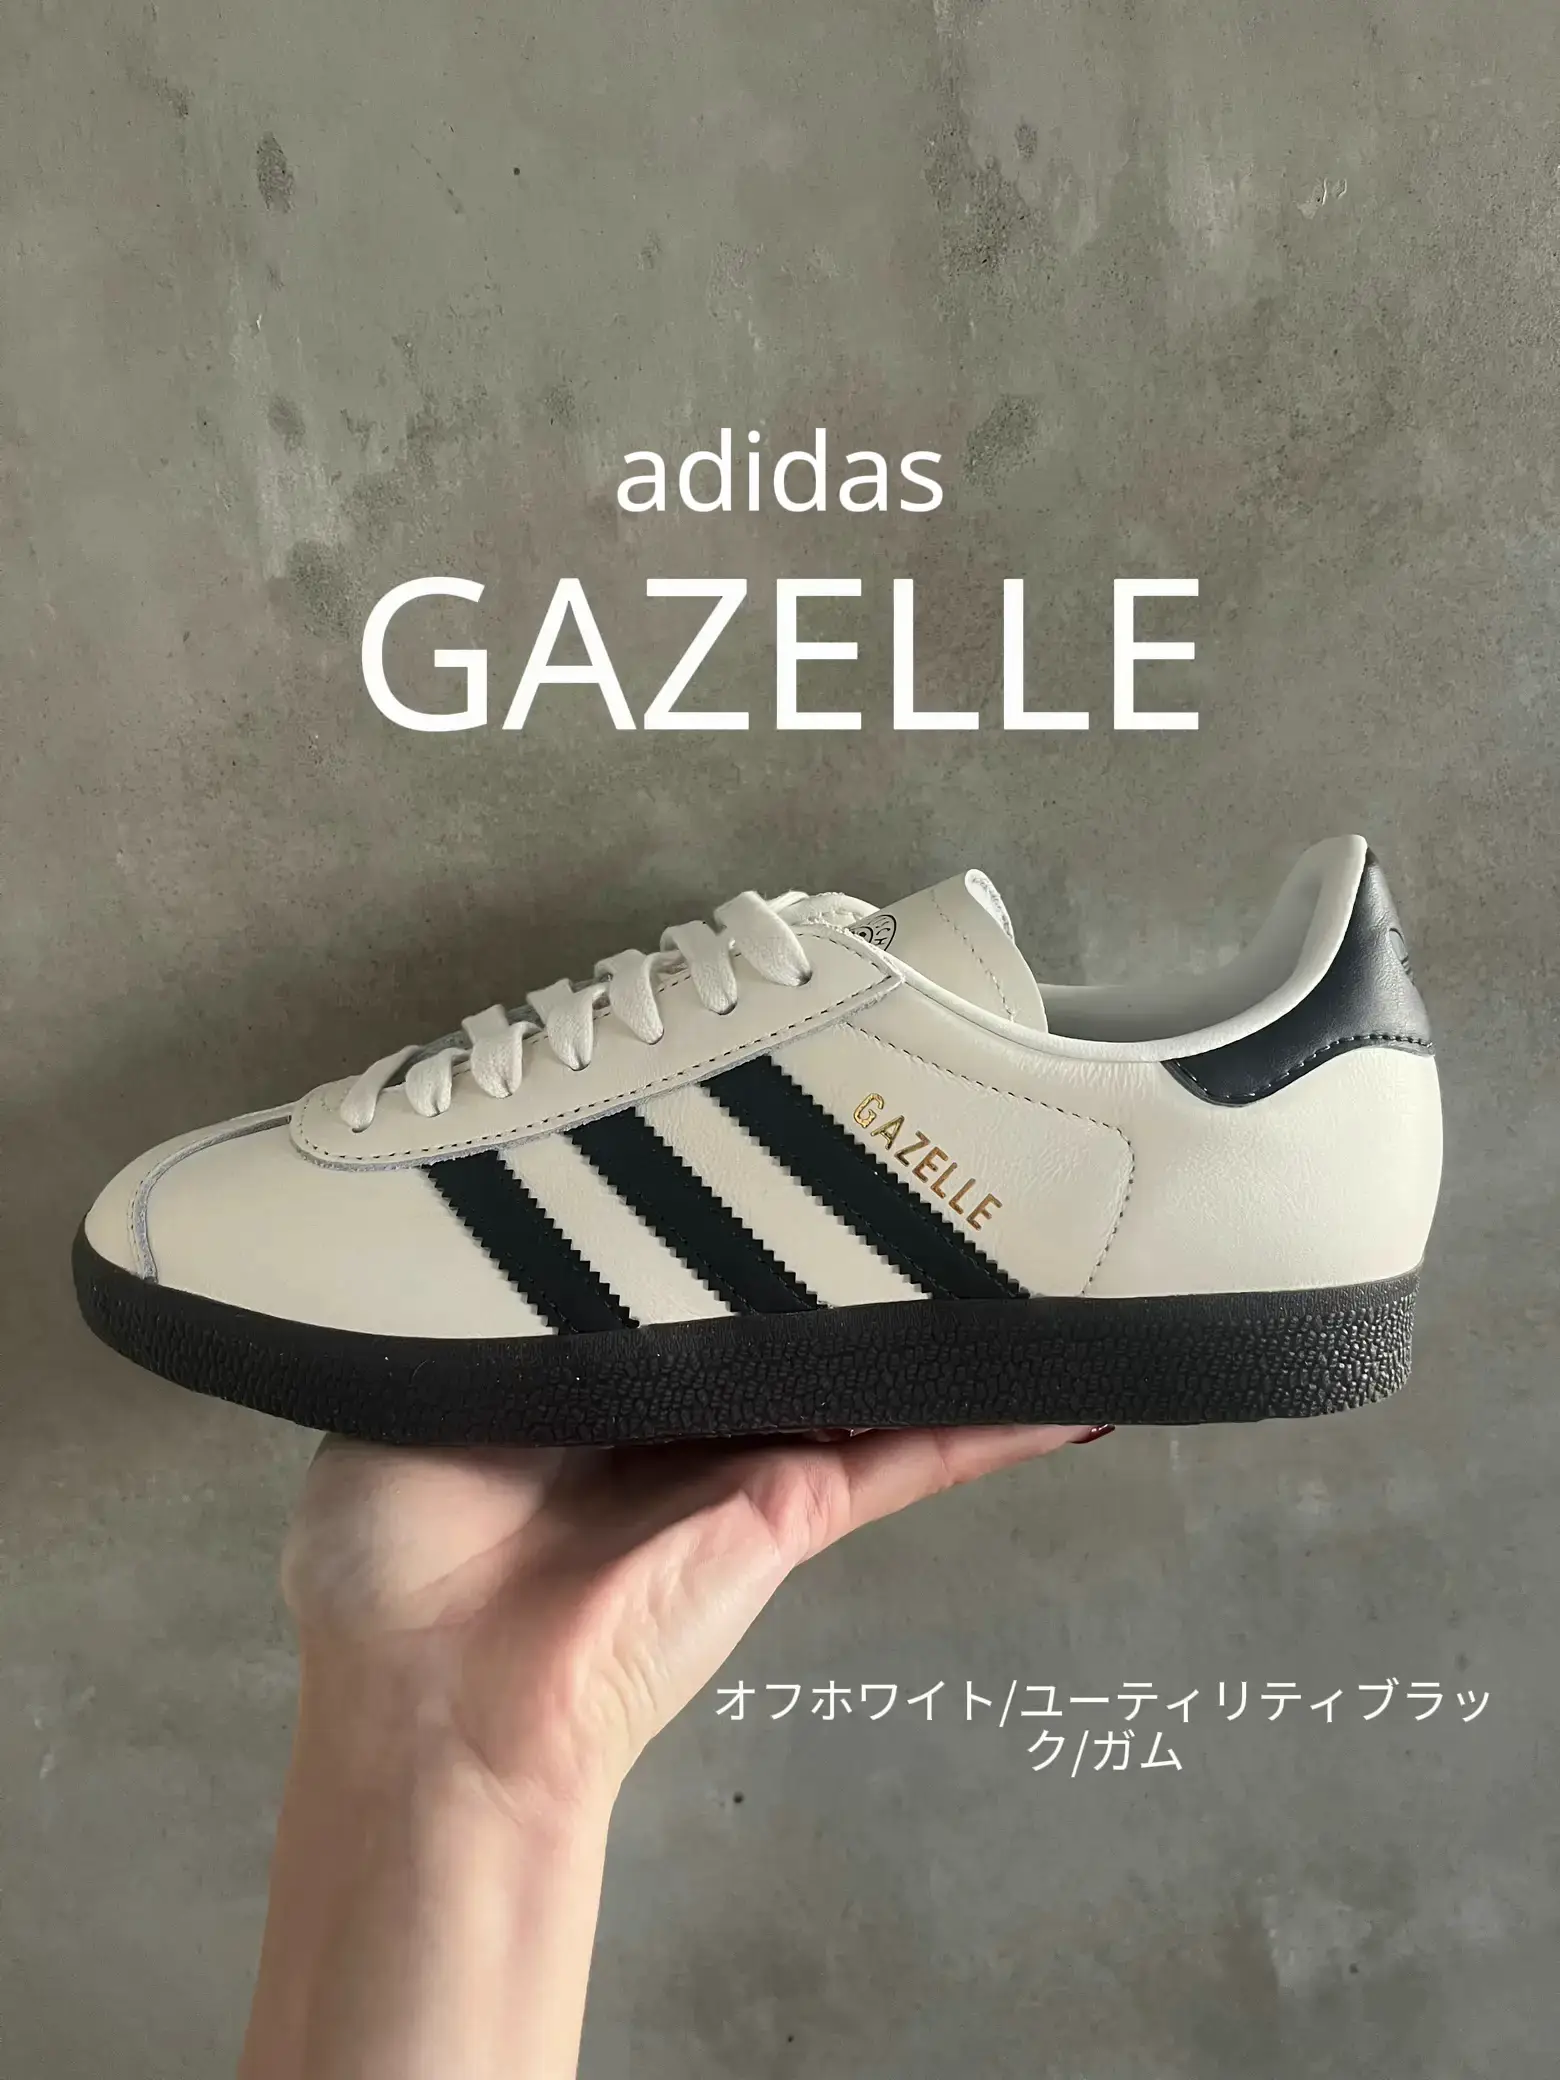 特価販売【新品】gazelle ガゼル 28.5 adidas/samba好きの方にも 靴